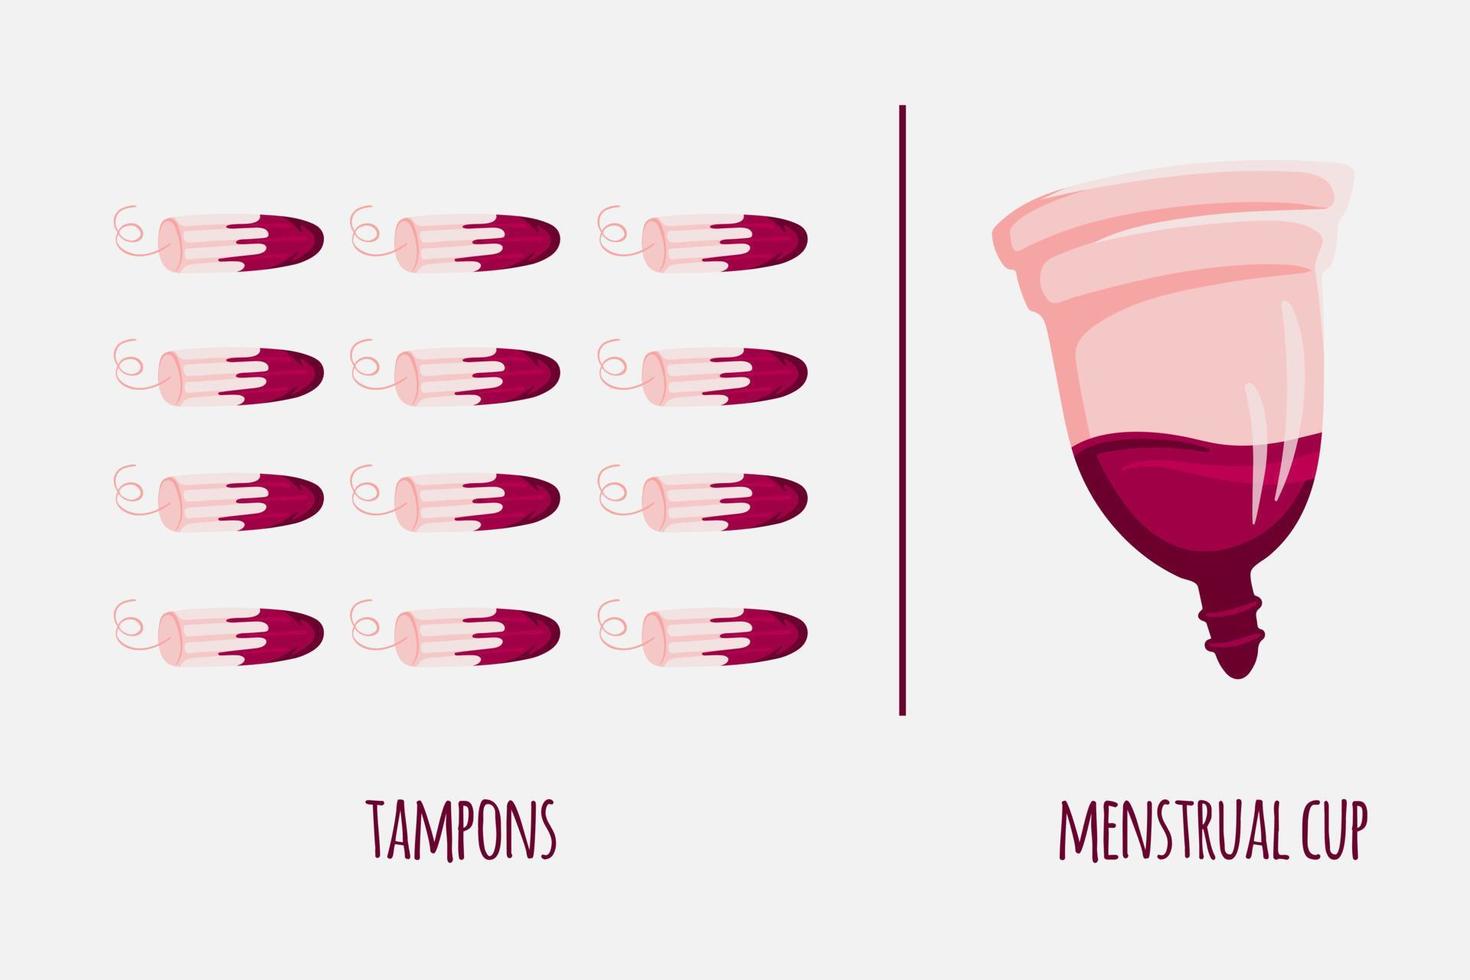 nul verspilling menstruatie periode menstruatie- kop vs tampons. vector illustratie. herbruikbaar eco vriendelijk concept.